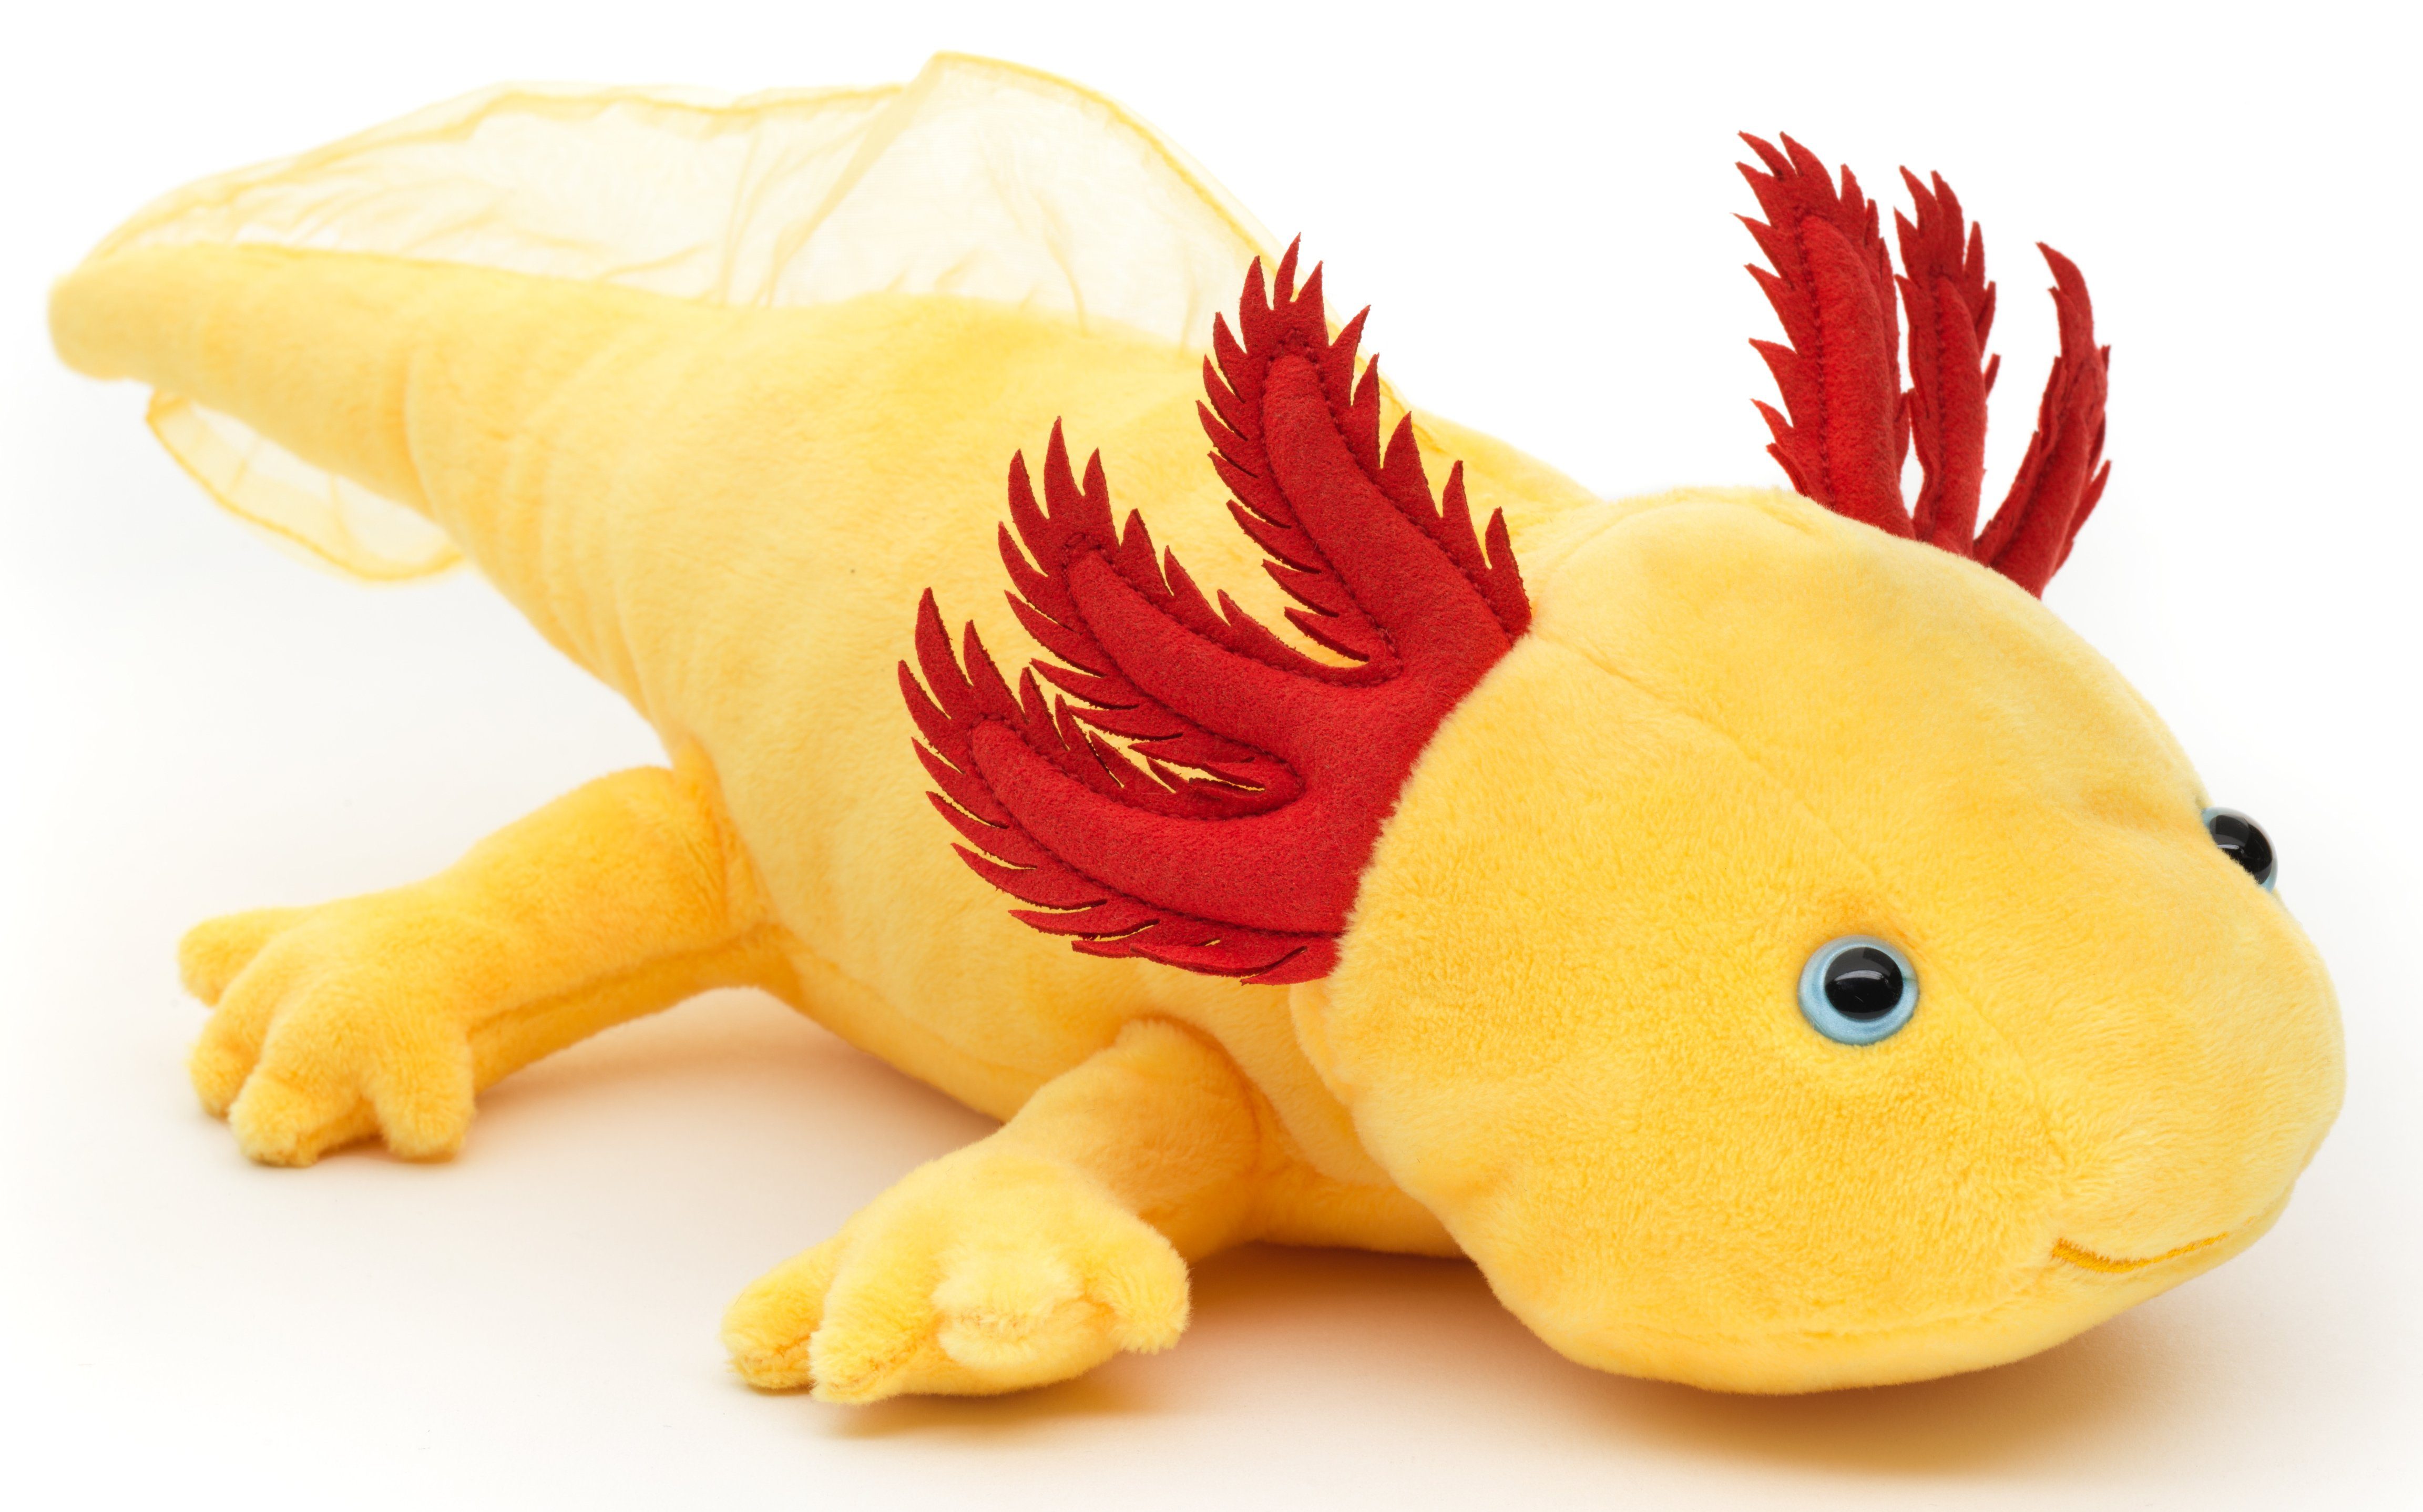 Uni-Toys Kuscheltier Axolotl - verschiedene Farben - 32 cm (Länge) - Plüsch, Plüschtier, zu 100 % recyceltes Füllmaterial